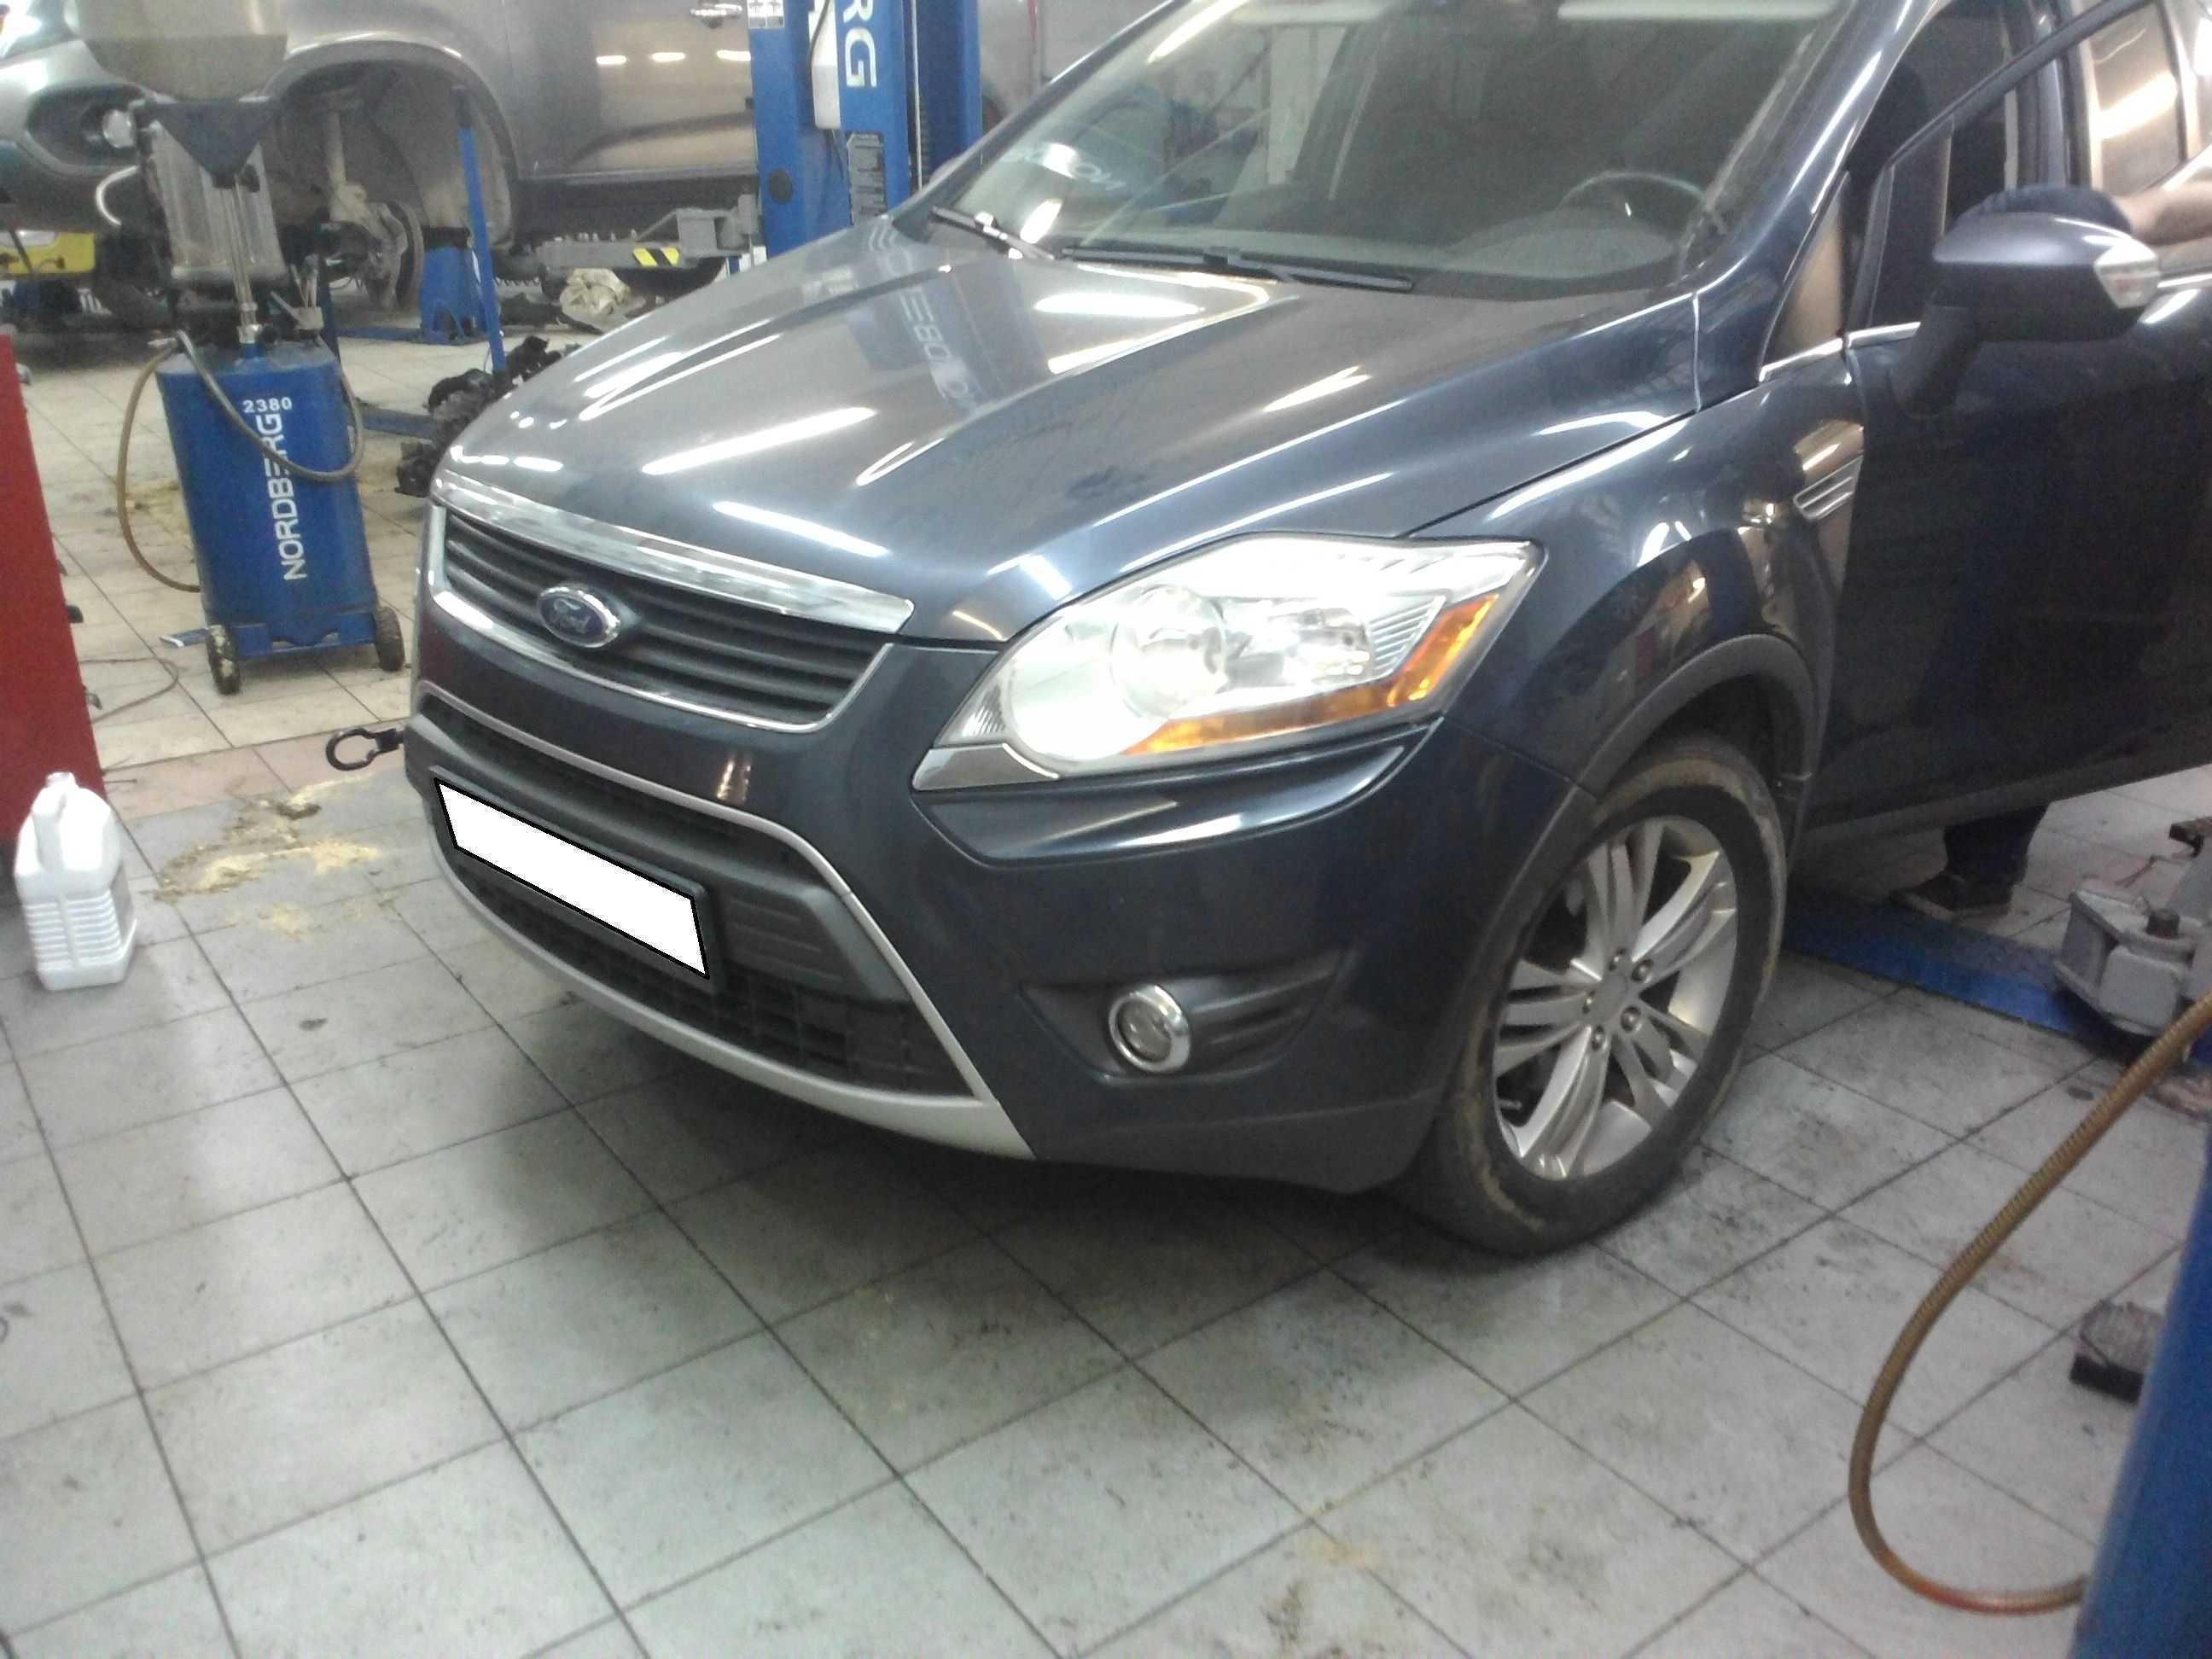 Замена ГРМ Форд (Ford), цена в Казани